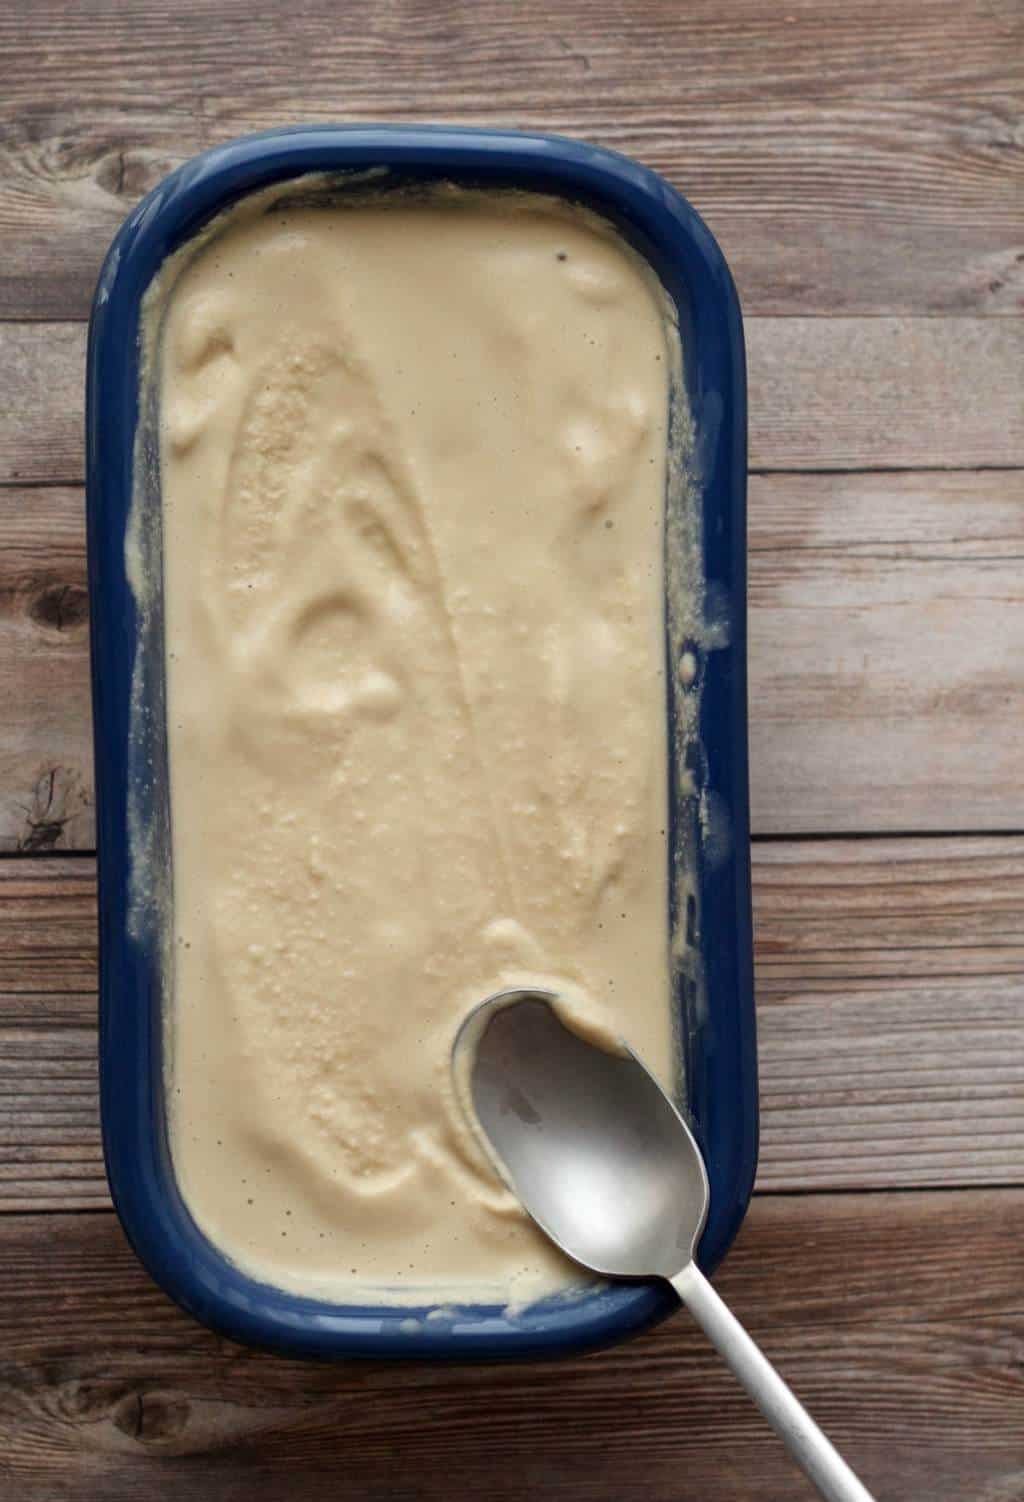 Vegan Salted Caramel Ice Cream #vegan #lovingitvegan #saltedcaramel #icecream #glutenfree #dairyfree #dessert